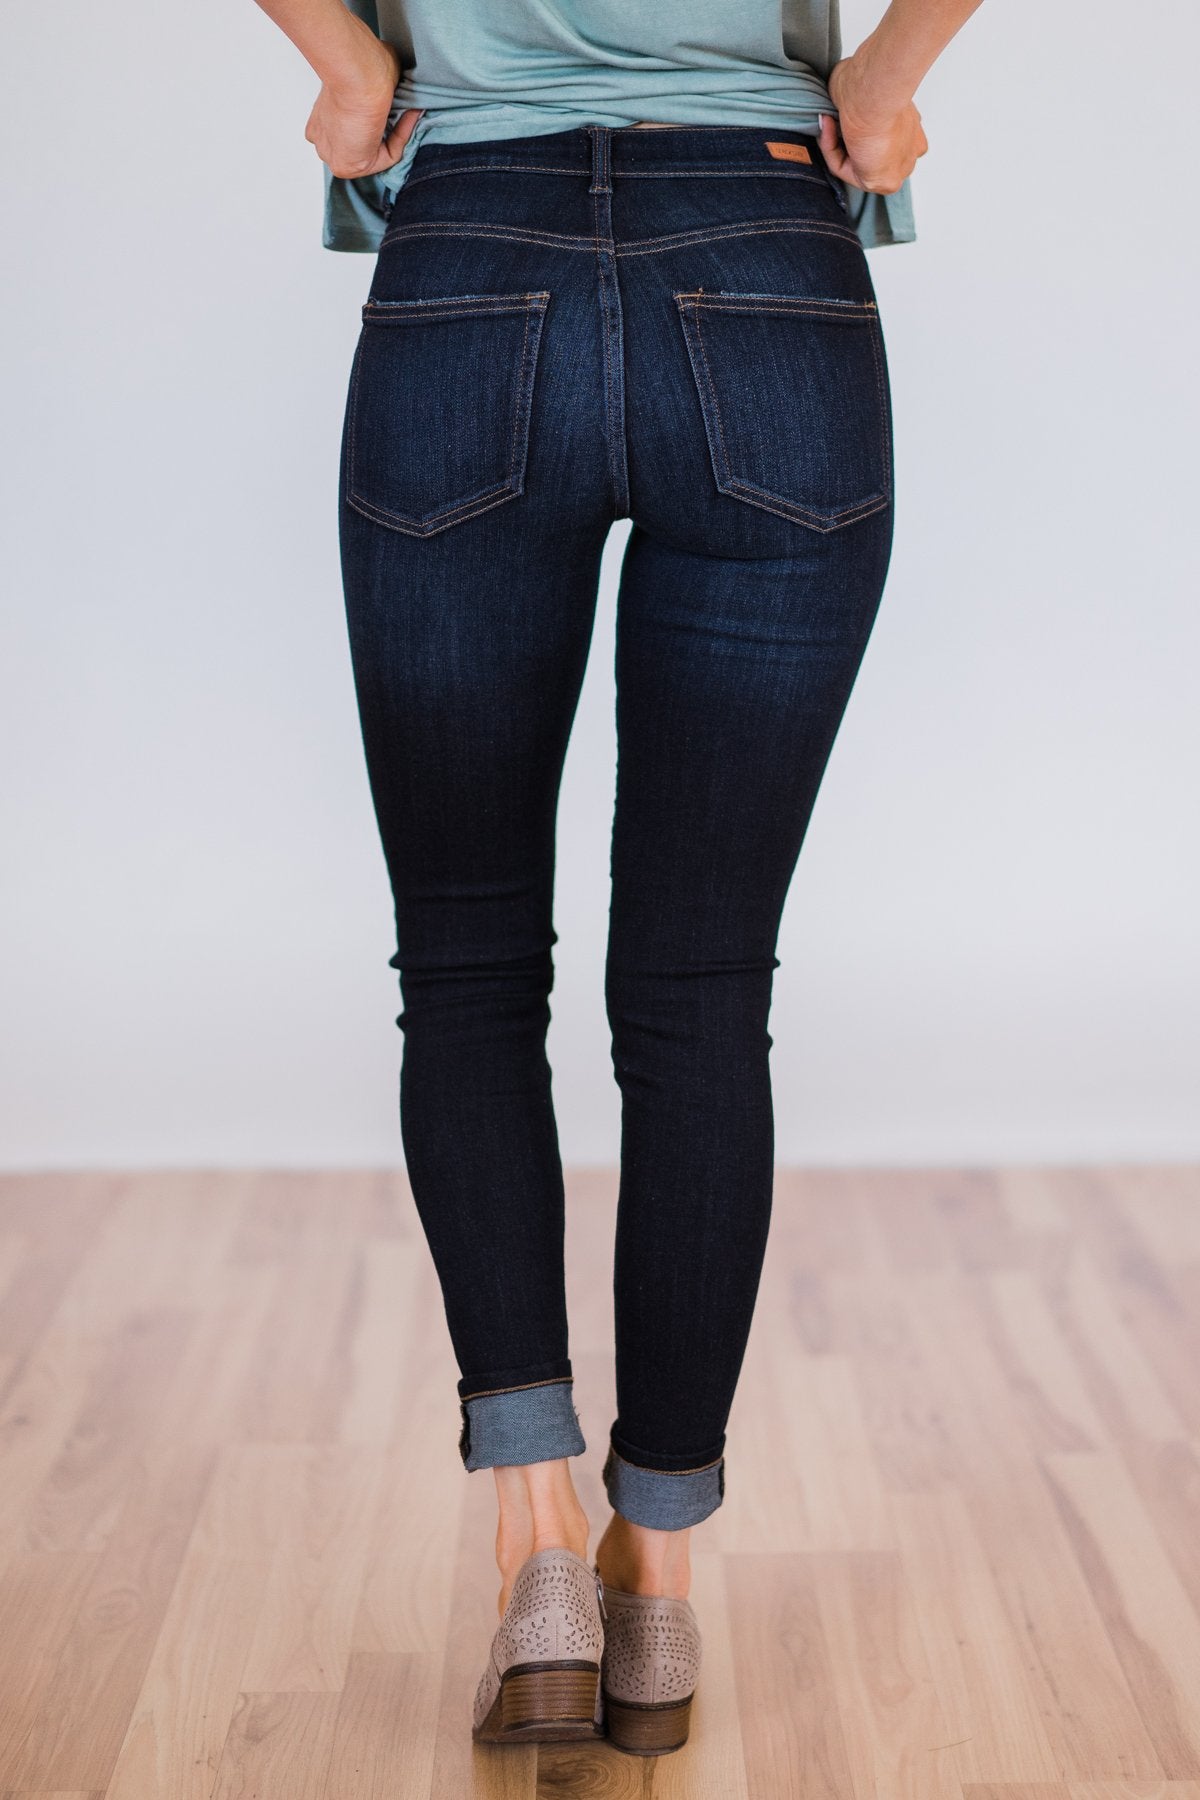 sneak peek jeans